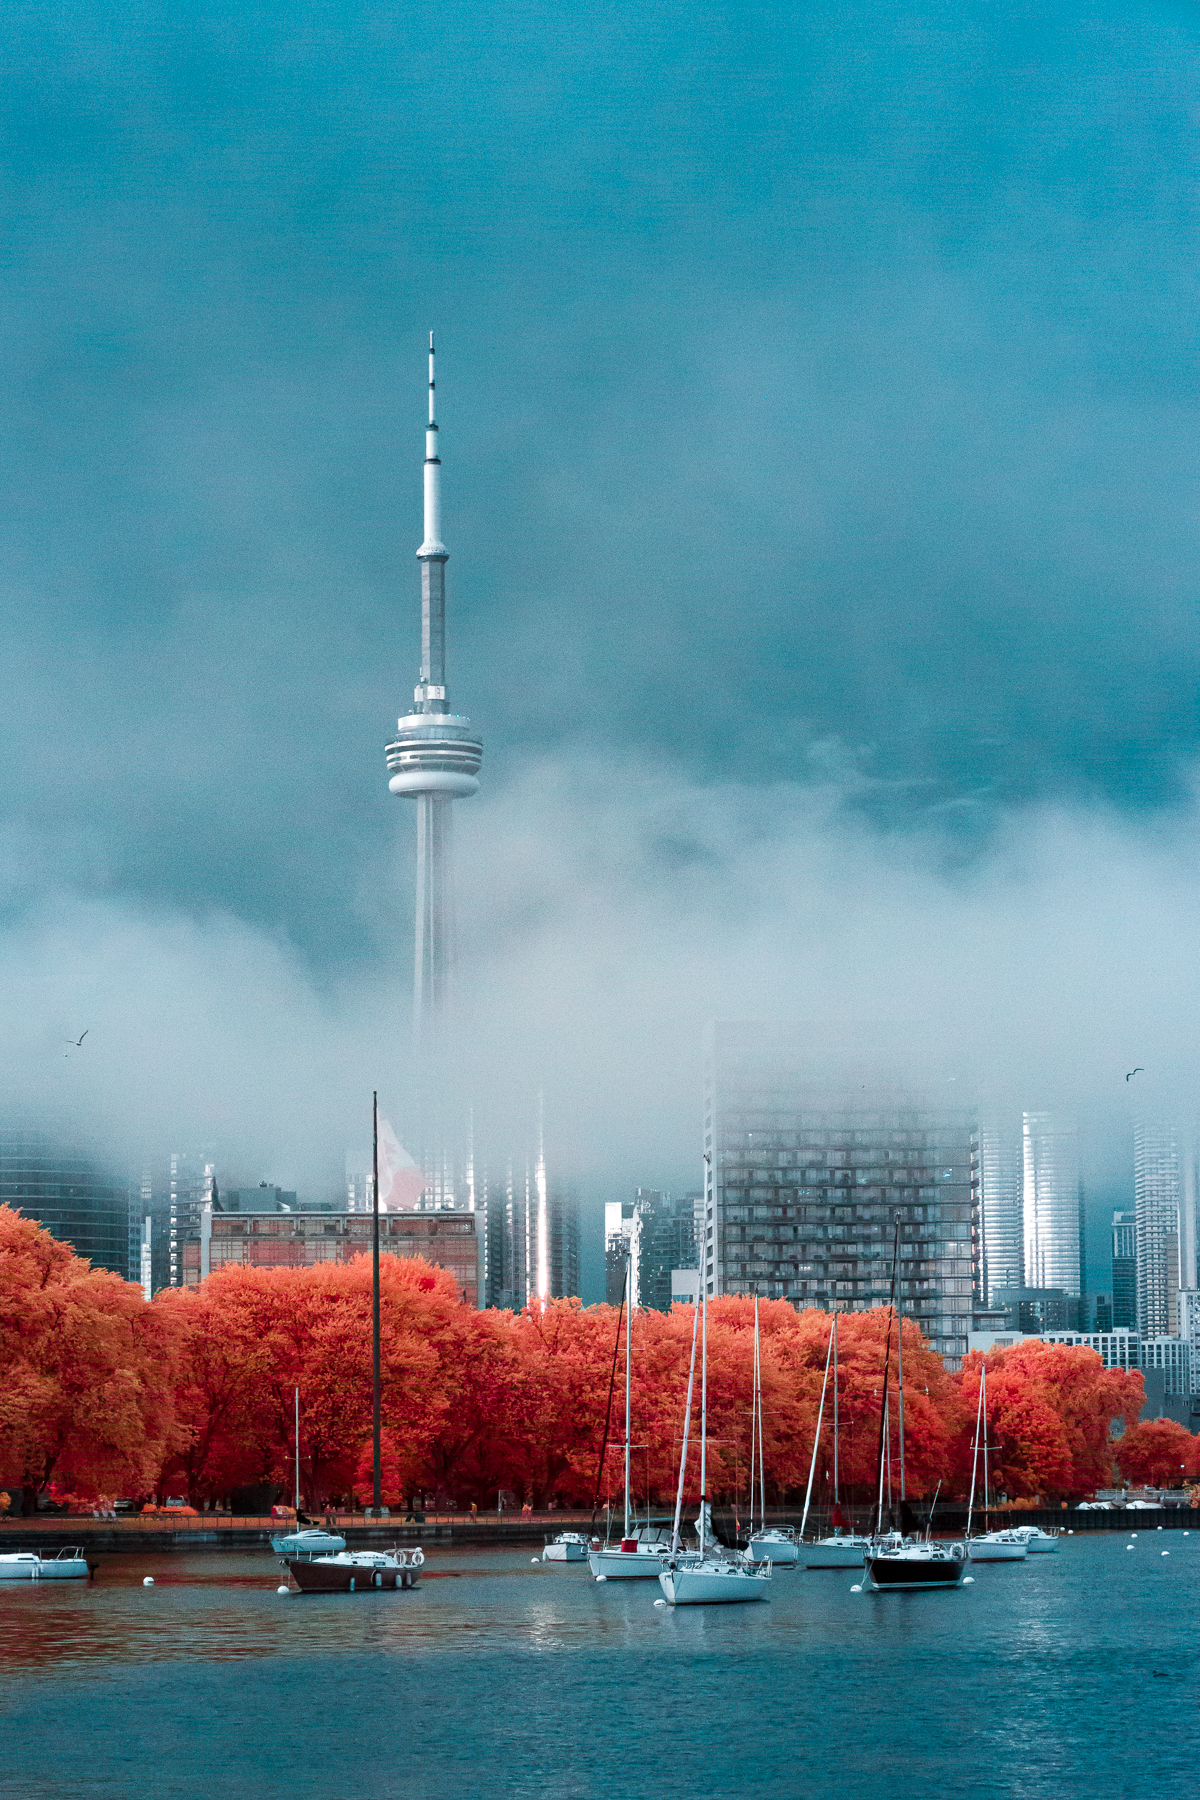 Toronto from Trillium Park. 590nm false color infrared.